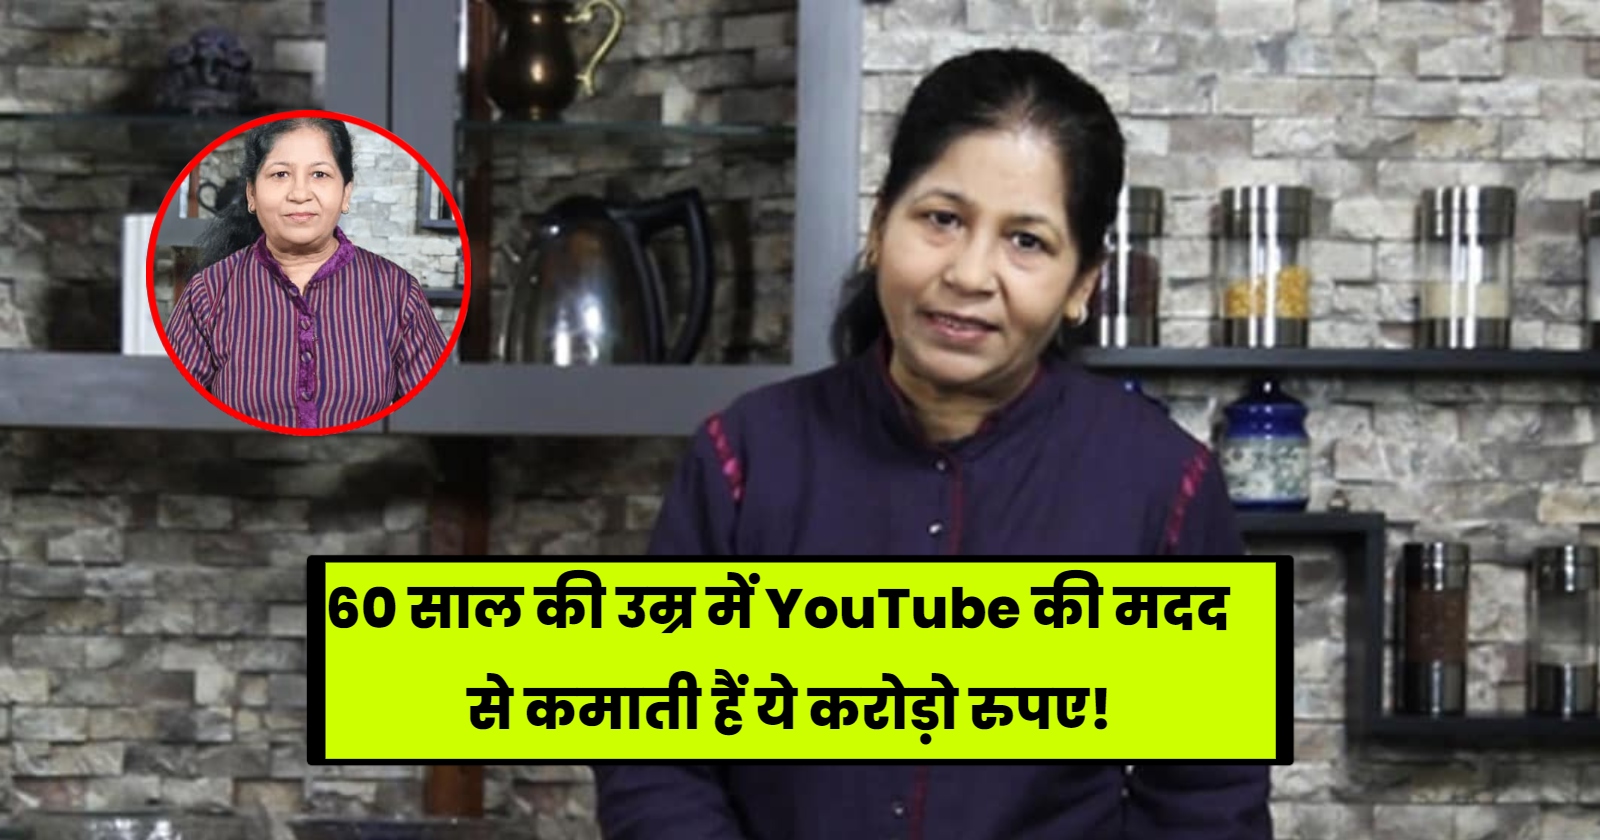 60 साल की उम्र में YouTube की मदद से कमाती हैं ये करोड़ो रुपए! hinditonews.in